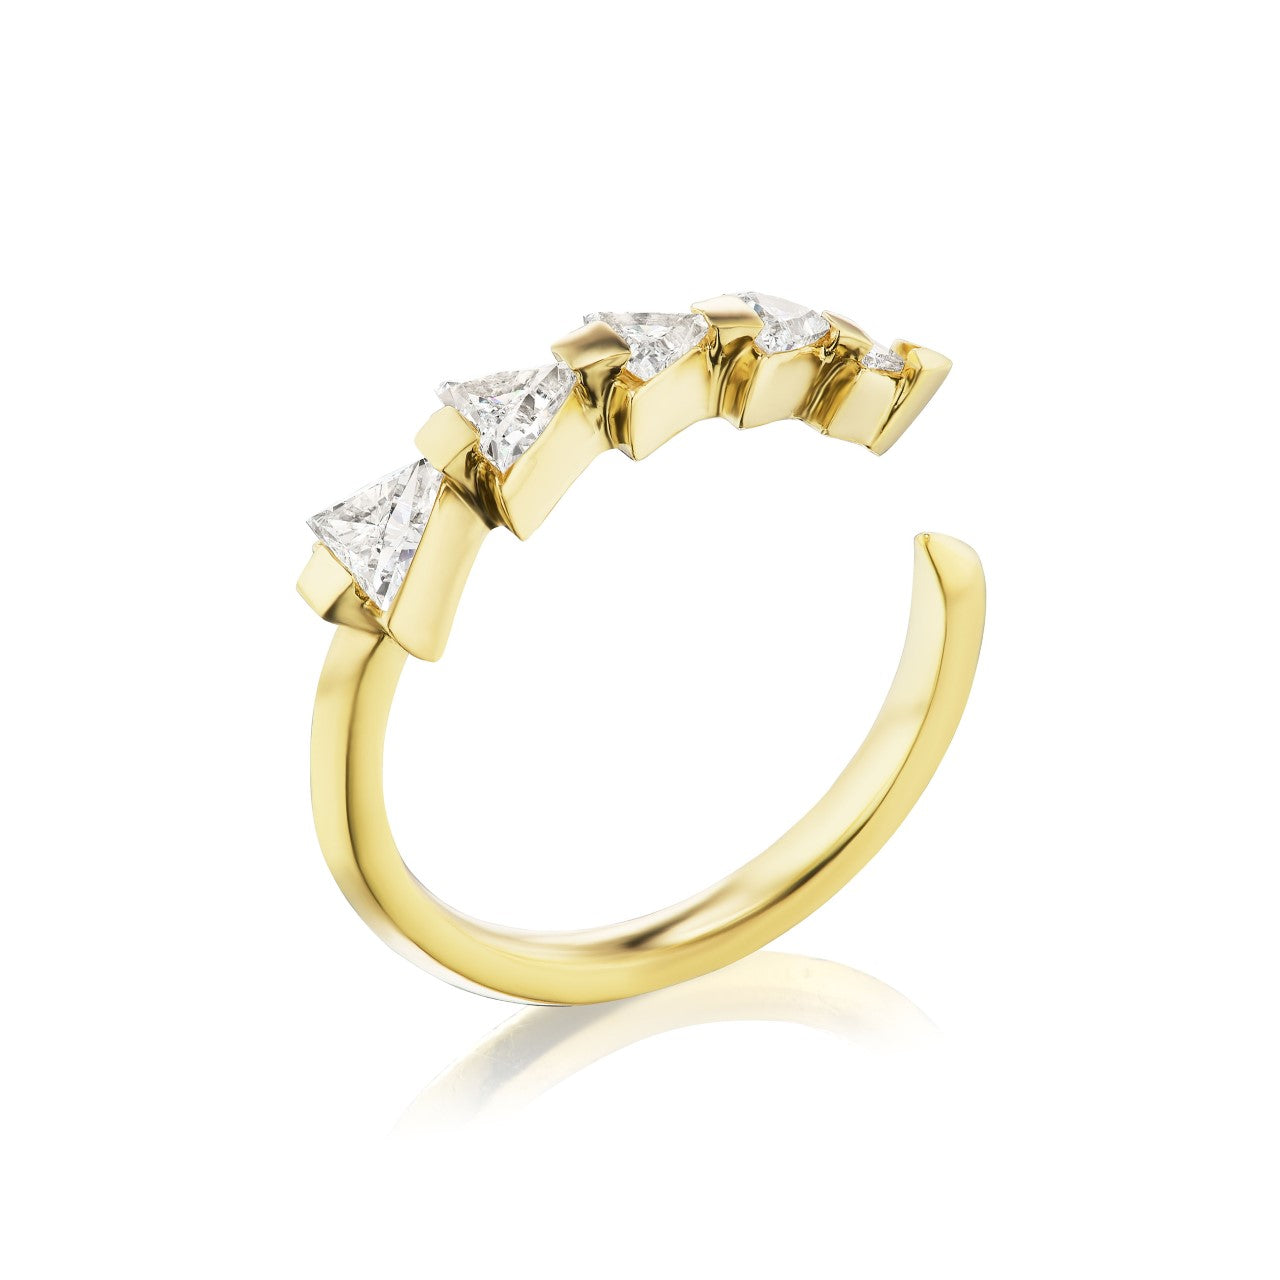 Tatau Five Stone Diamond Ring in 18k Yellow Gold